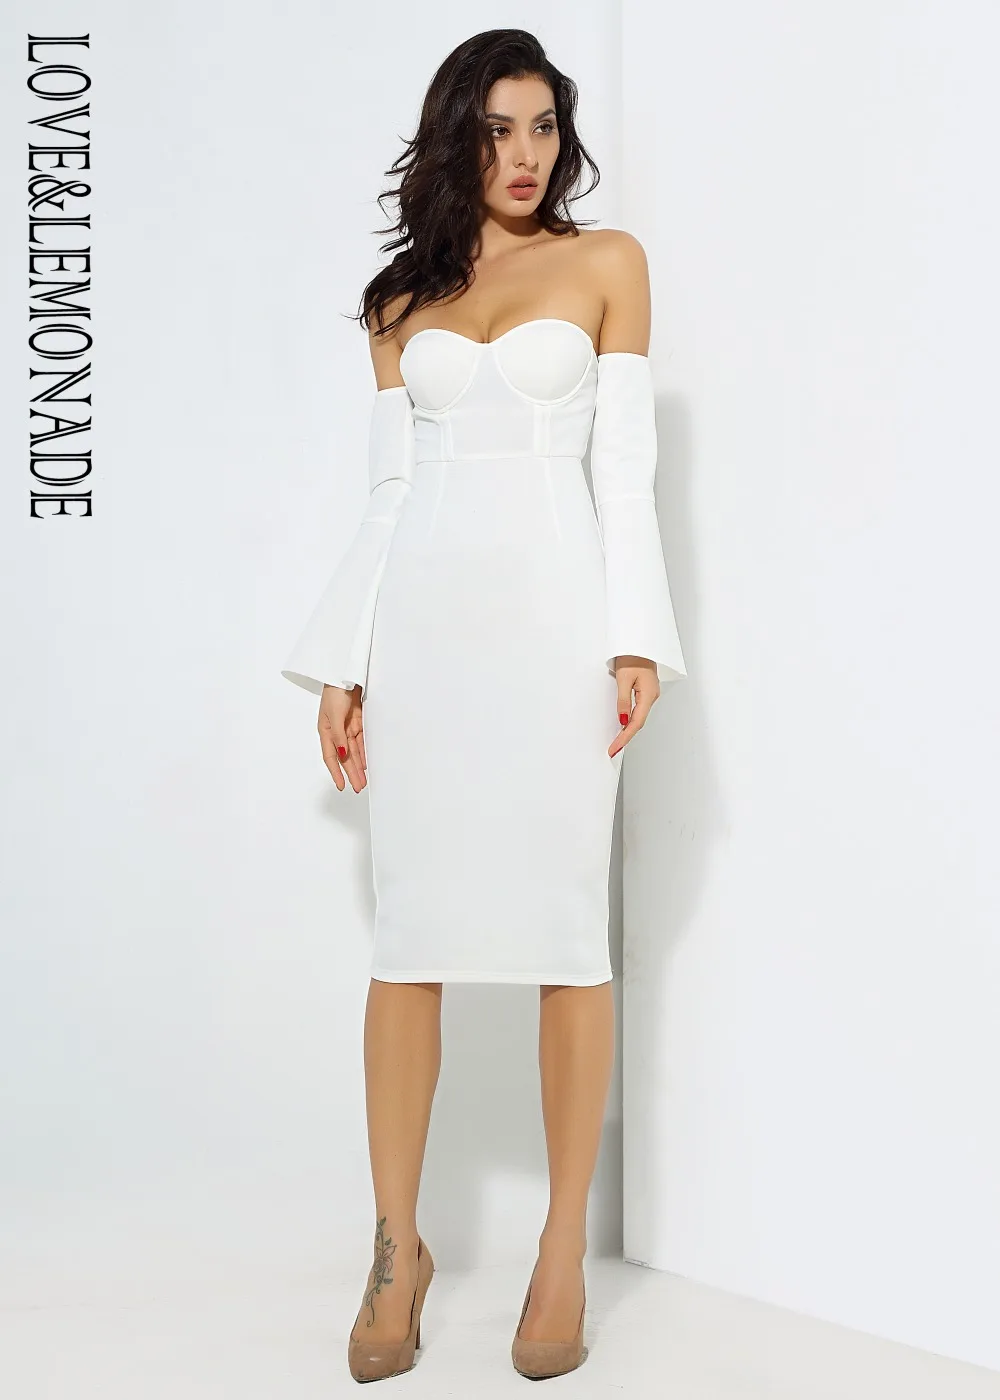 Любовь и лимонад. Белые облегающие Вечерние платья из плотной ткани с рукавом-колокольчиком LM0712